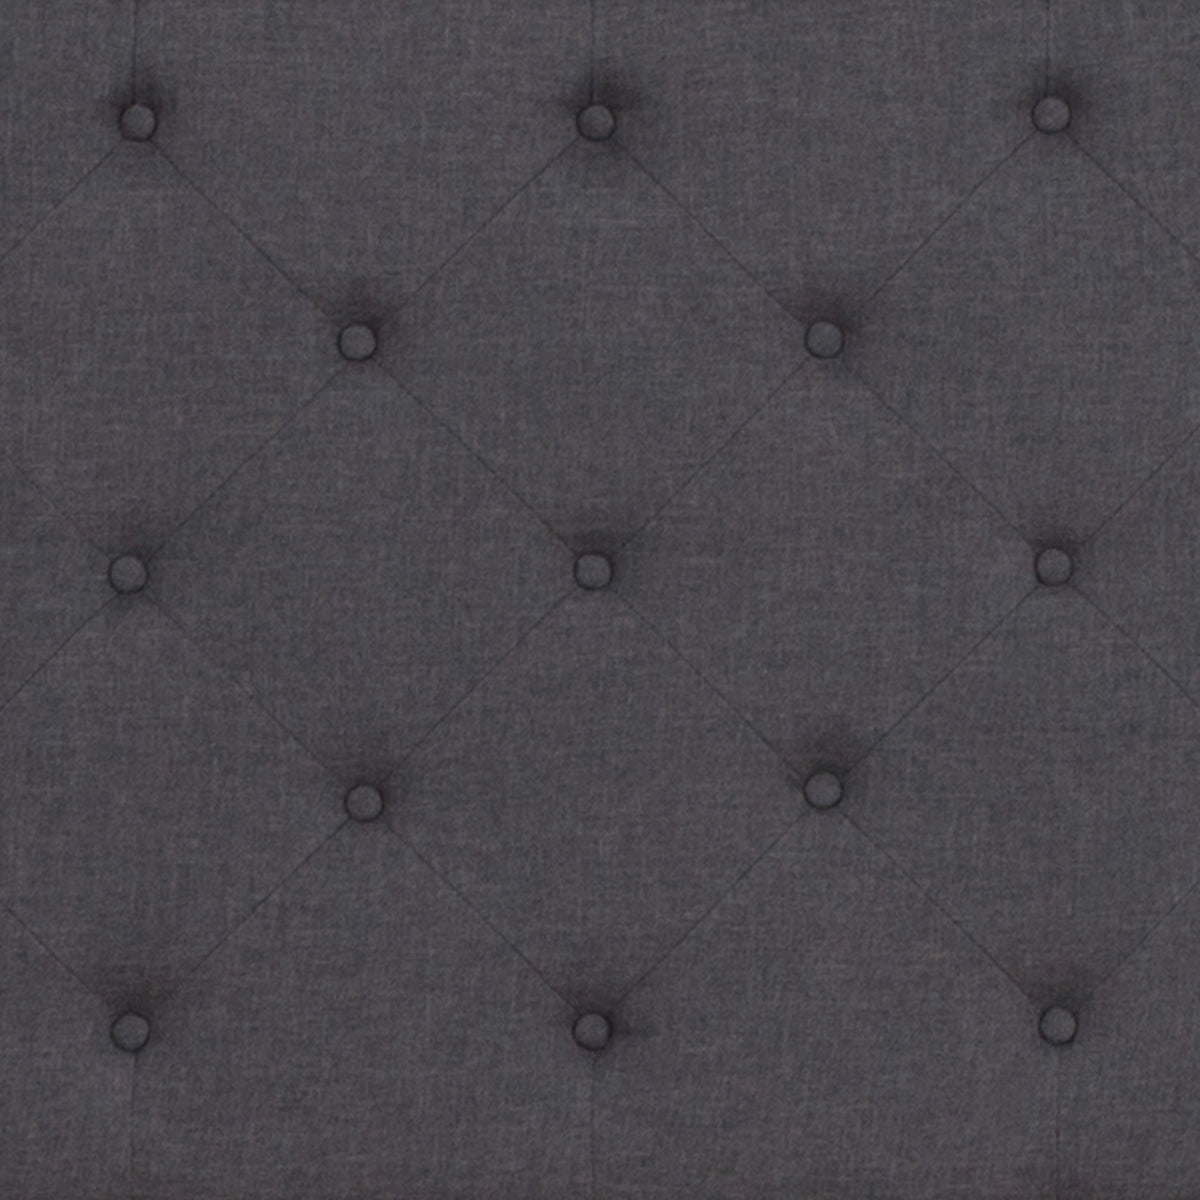 Dark Gray,Full |#| Full Tufted Platform Bed in Dark Gray Fabric with 10 Inch Pocket Spring Mattress